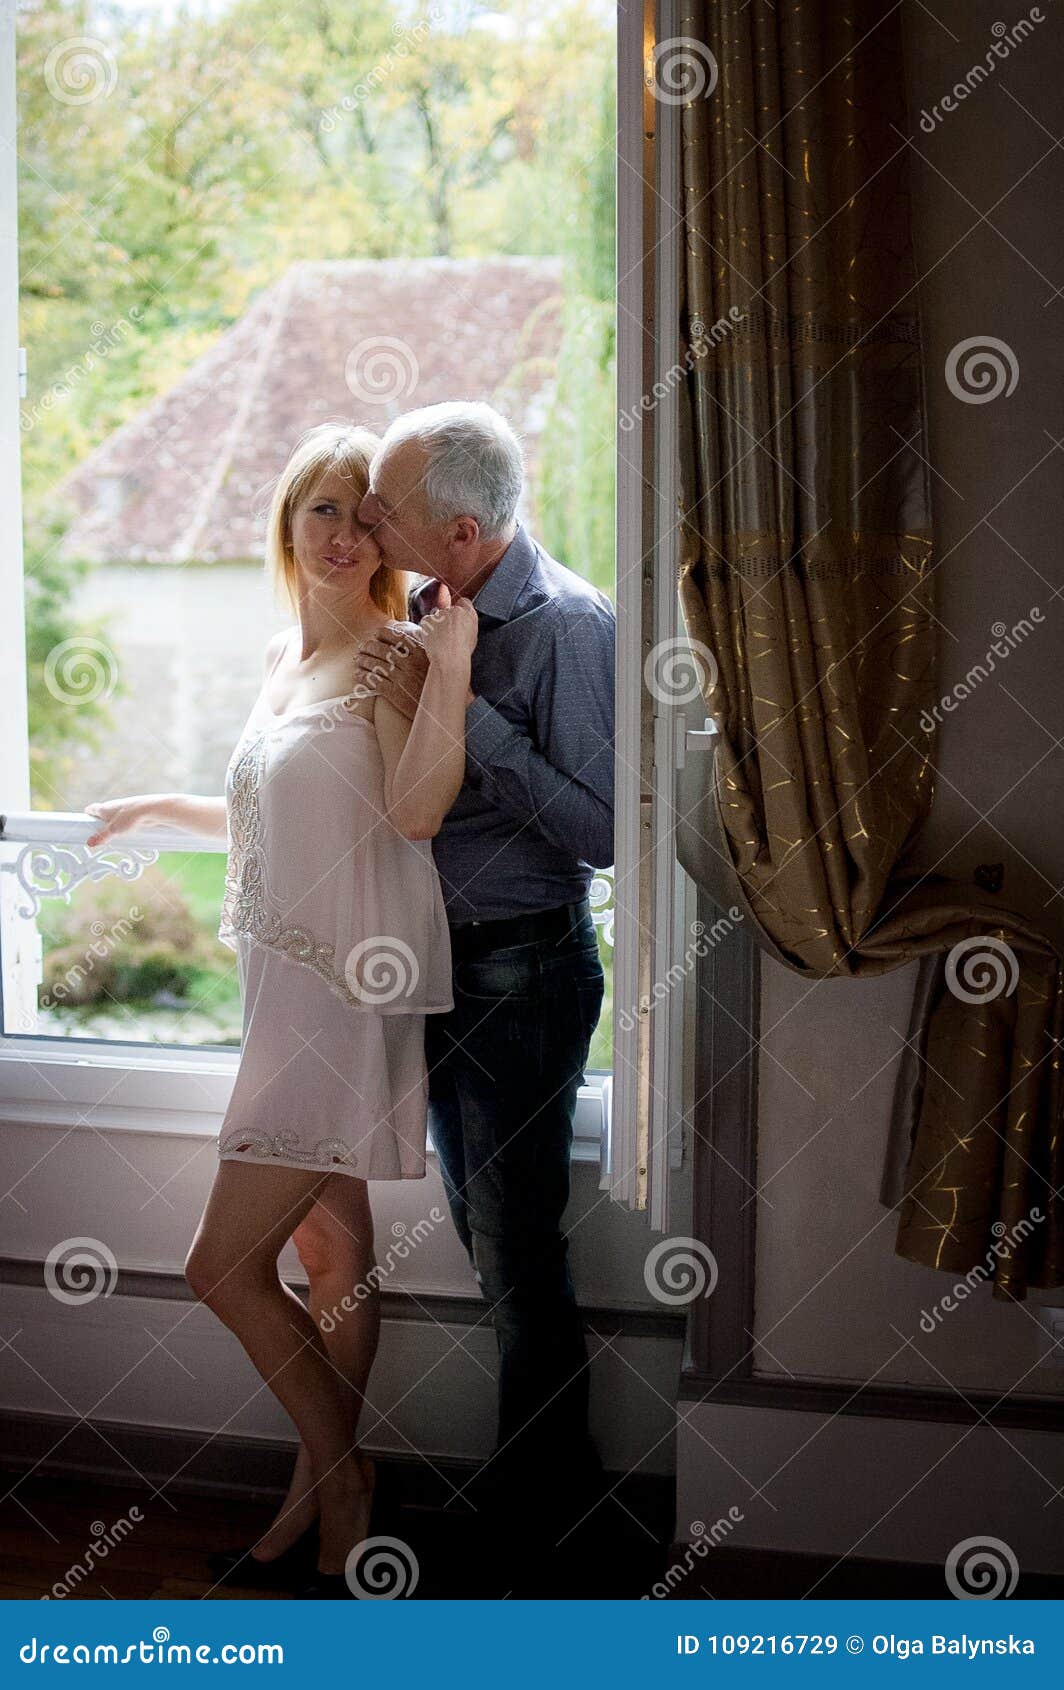 Portret van Sexy Vrouw die Op middelbare leeftijd van Omhelzing van Haar Bejaarde Echtgenoot genieten die zich dichtbij Geopend Venster binnen Hun Huis bevinden Paar met leeftijdsverschil